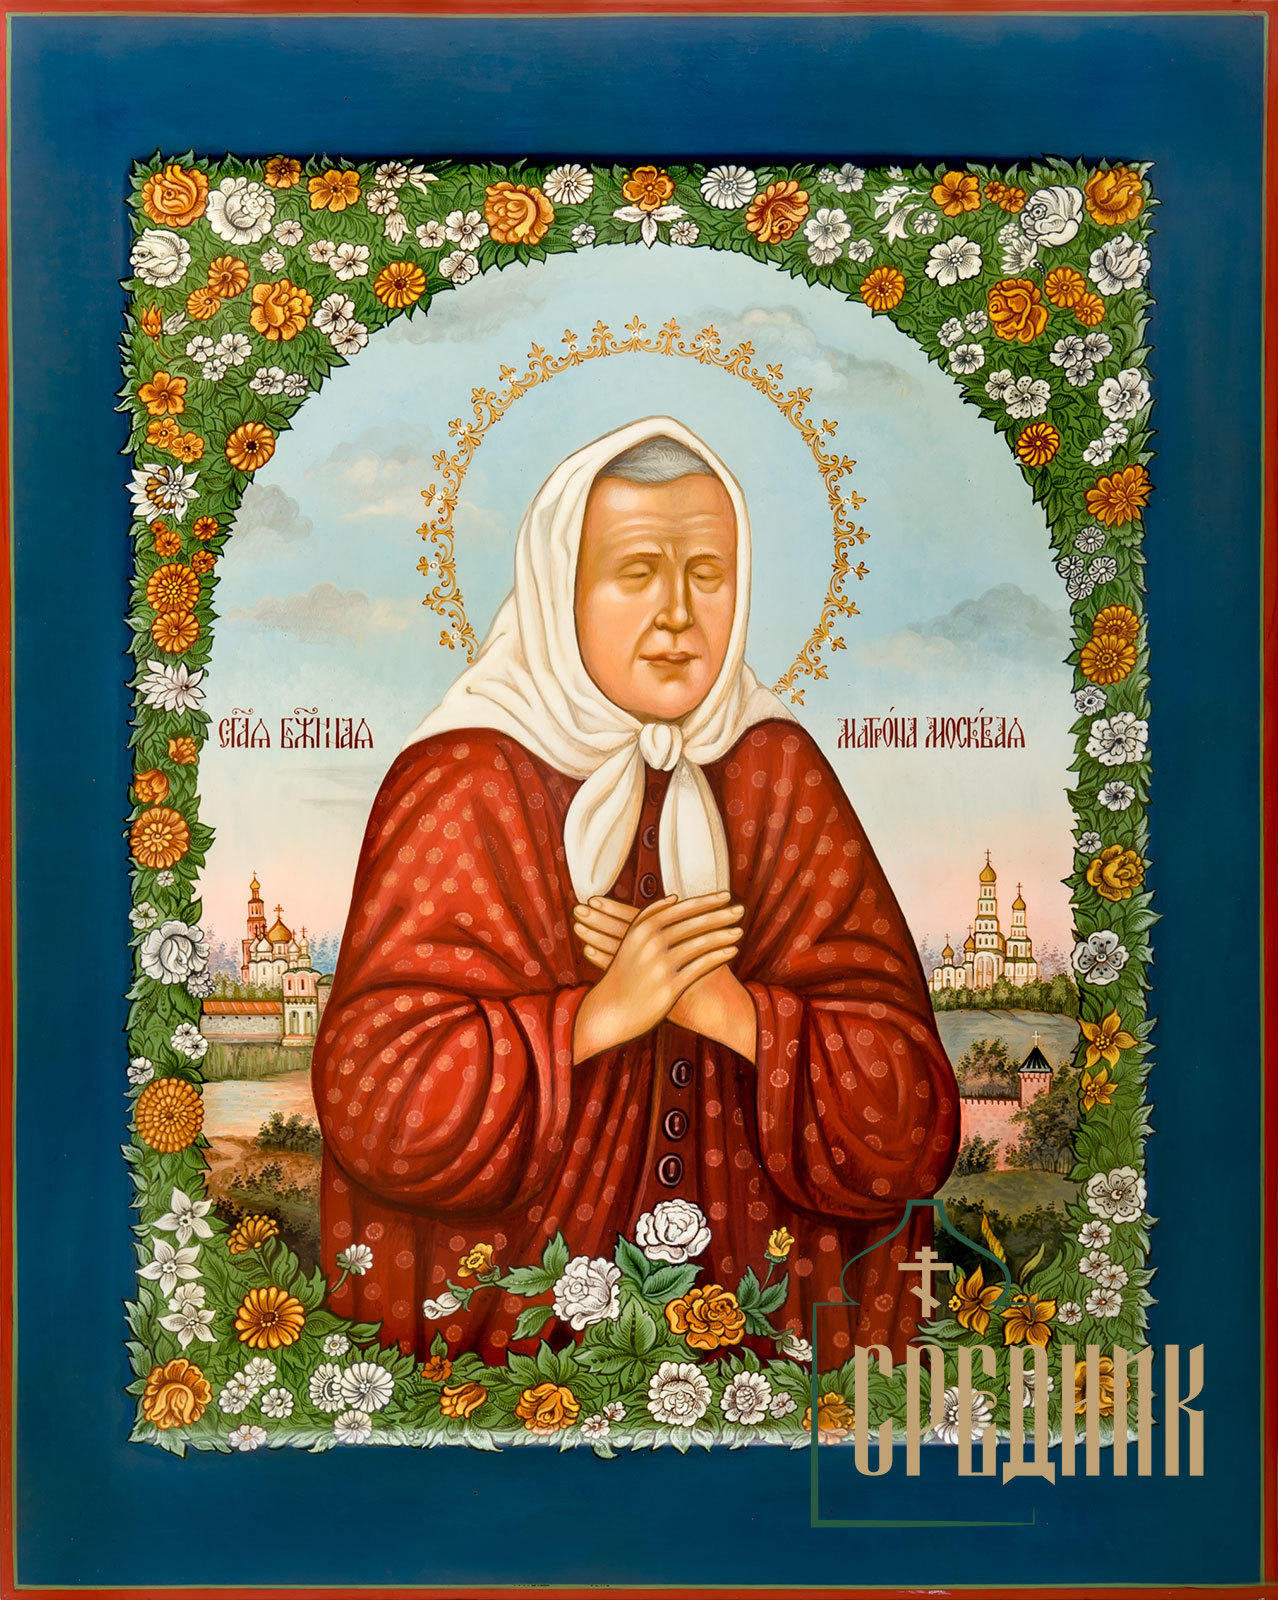 Акафист святой блаженной Матроне Московской (Сибирская Благозвонница)